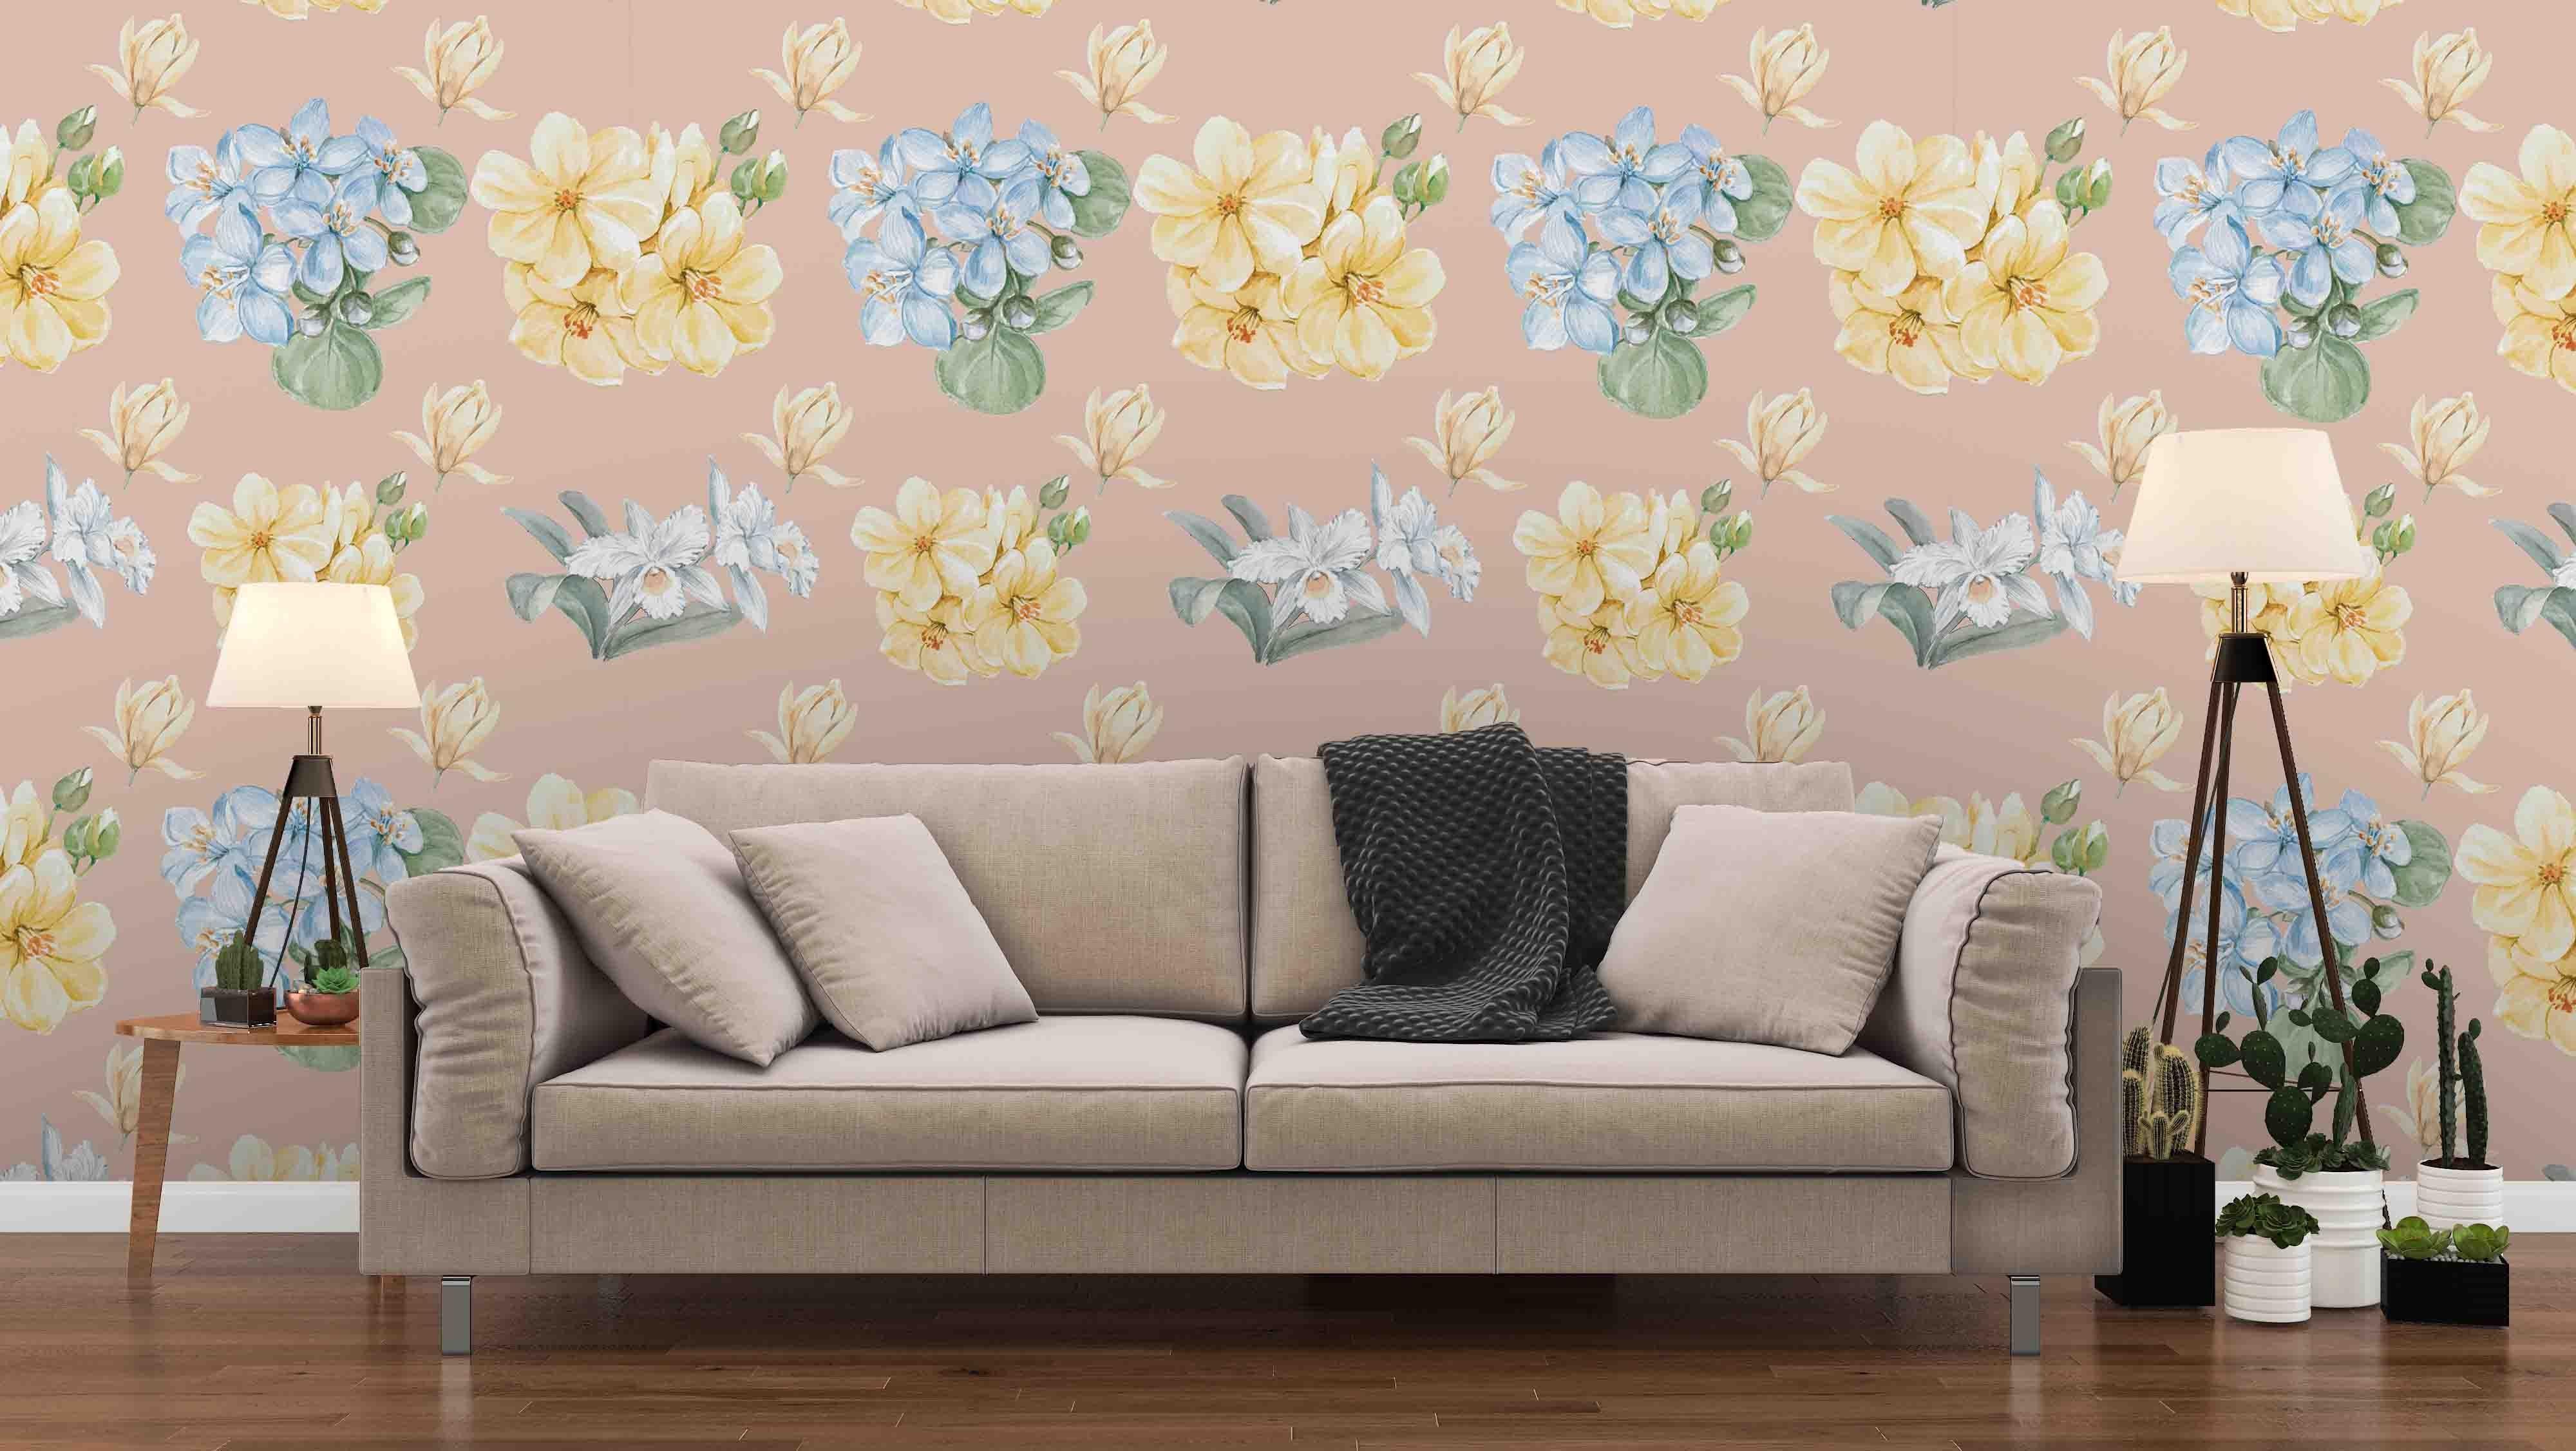 3D yellow flowers wall mural wallpaper 18- Jess Art Decoration